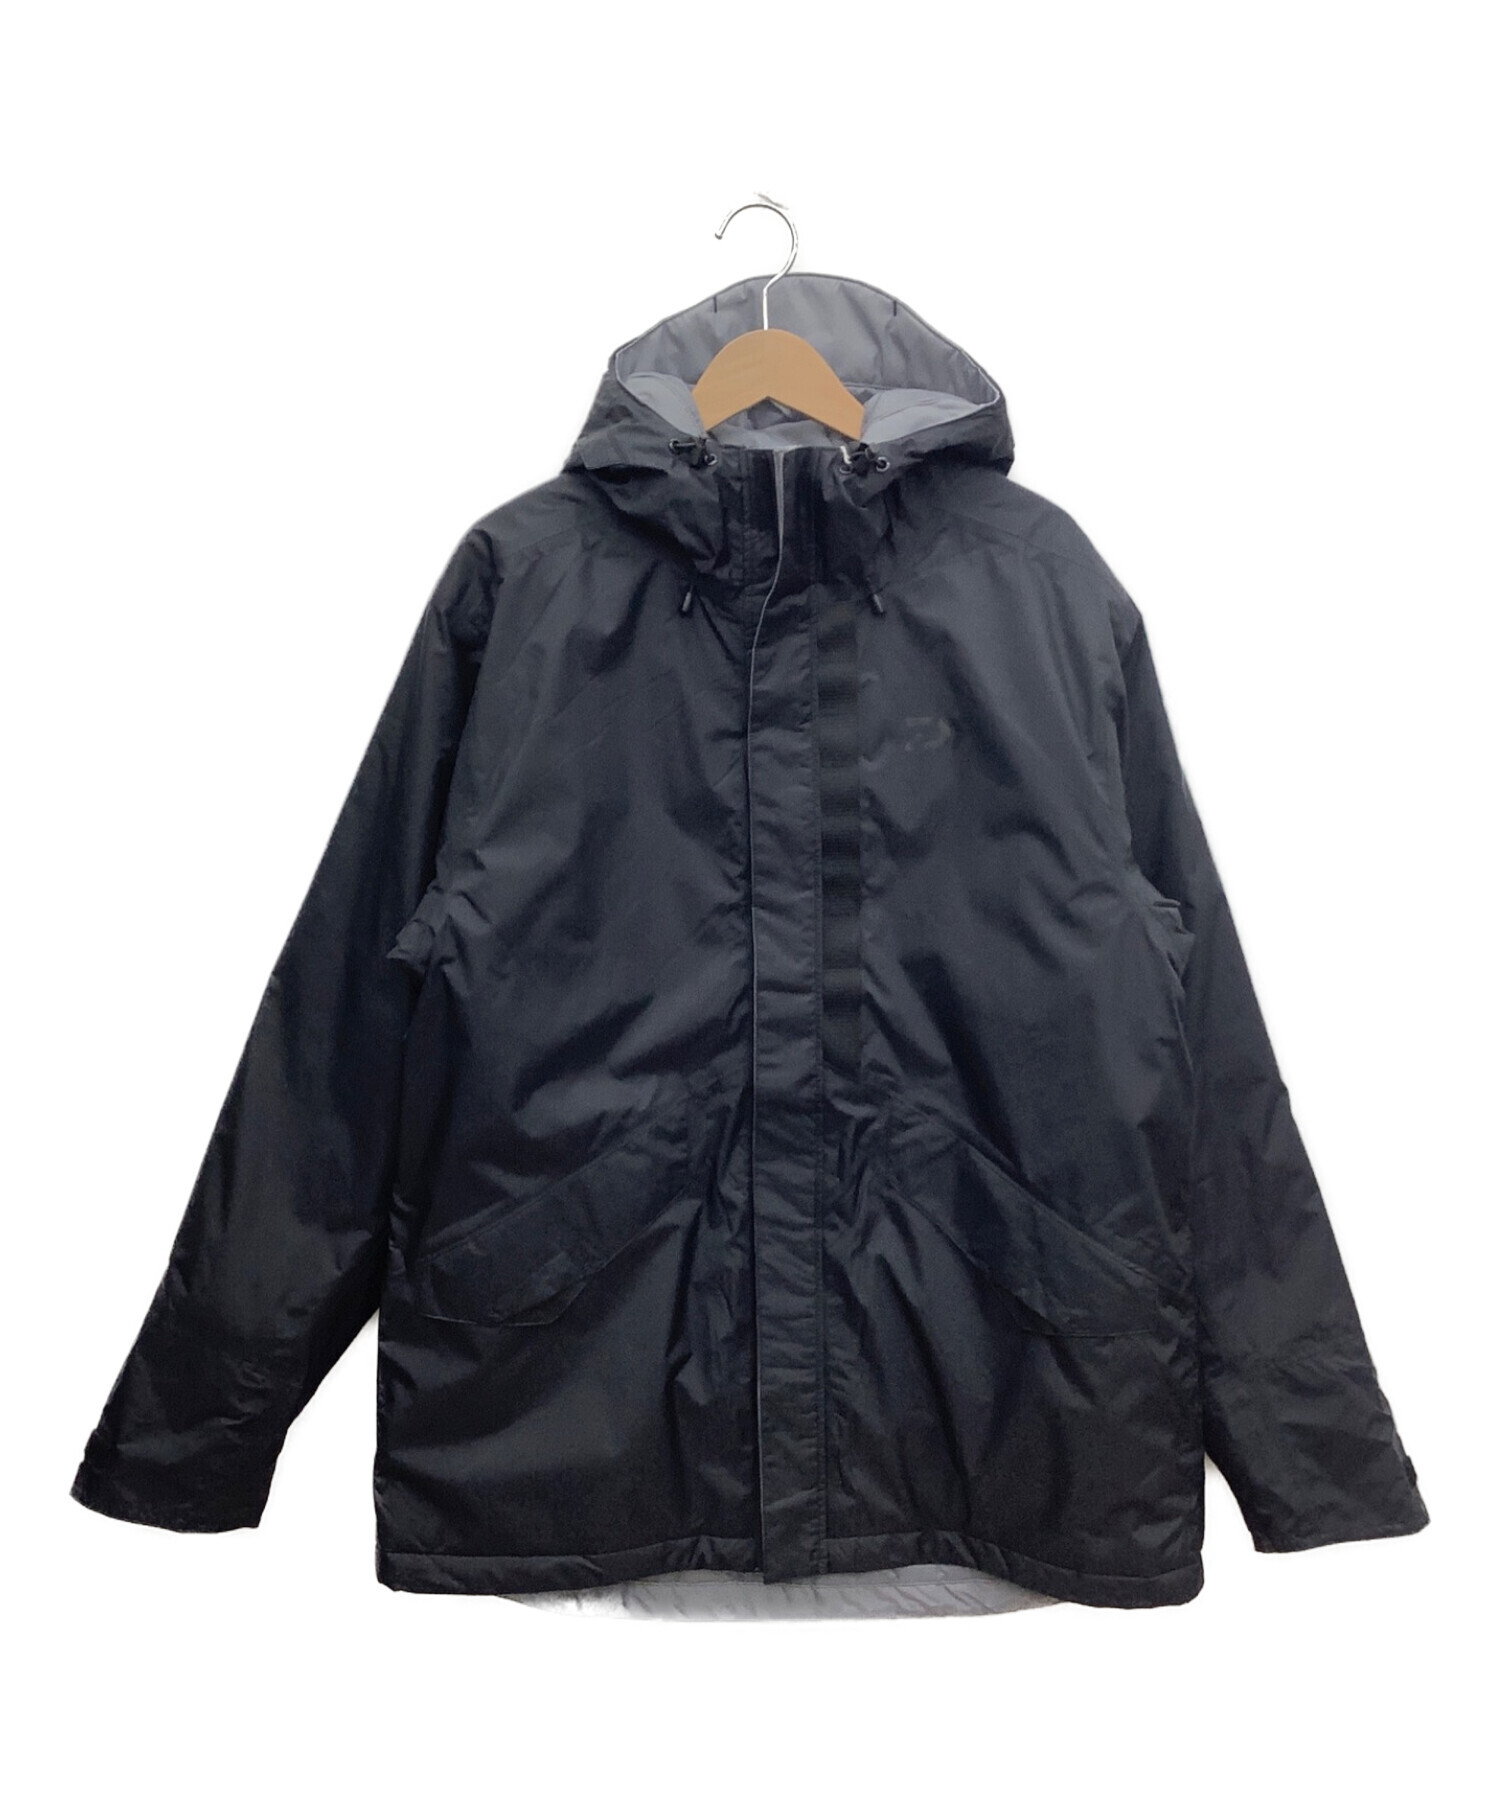 DAIWA (ダイワ) レインマックス ウィンタージャケット ブラック サイズ:XL 未使用品